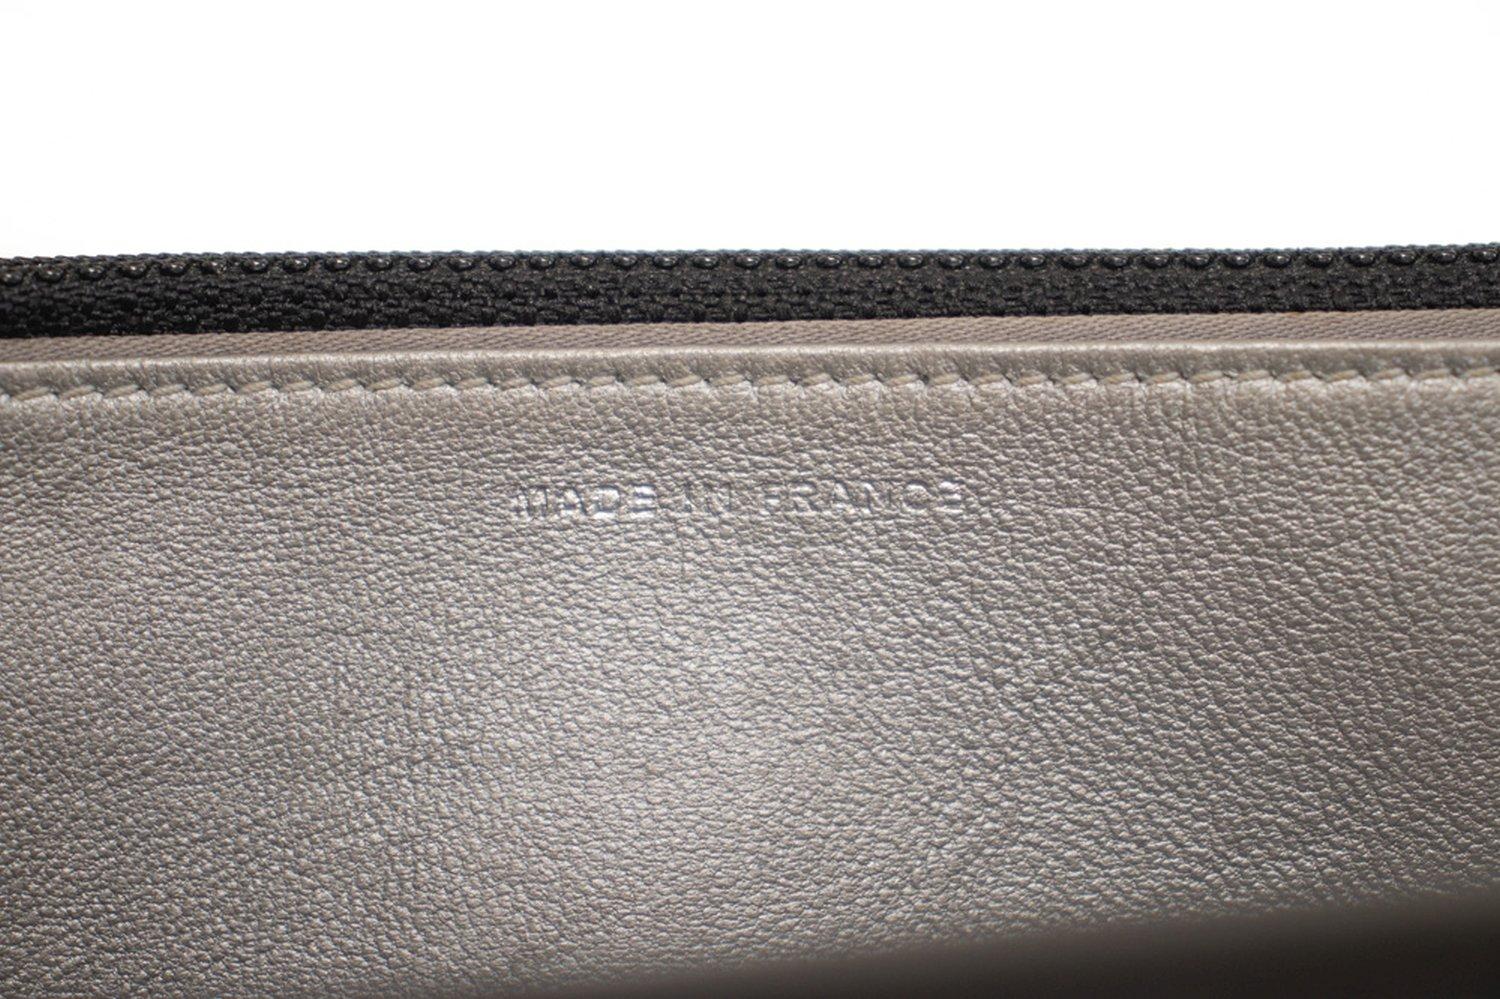 CHANEL Black Camellia Embossed WOC Wallet On Chain Shoulder Bag 12